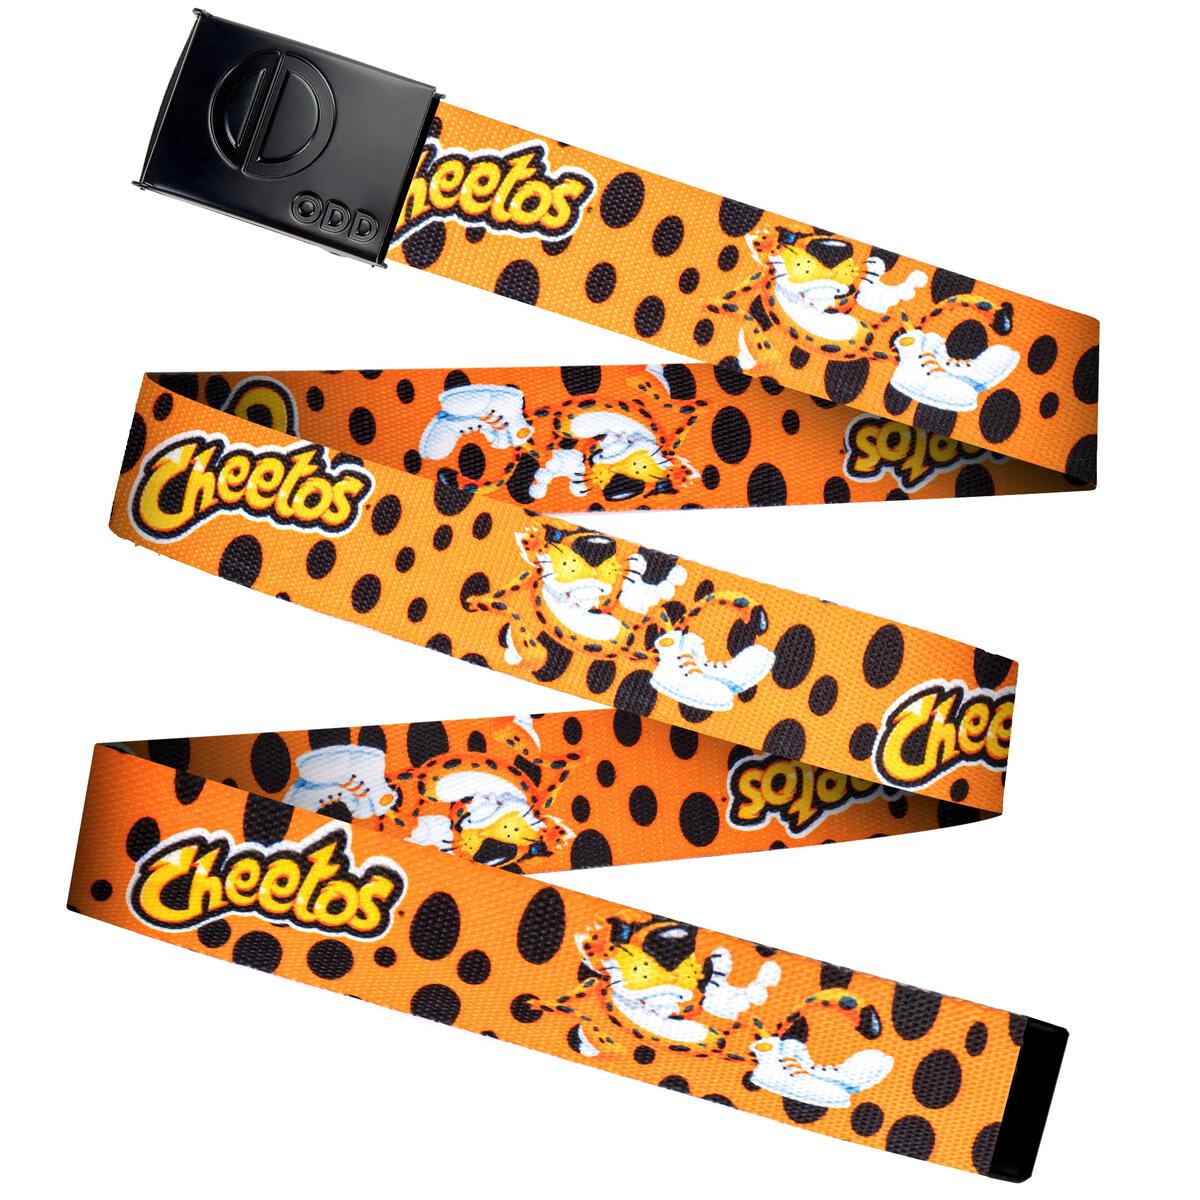 Cheetos & Chester - Unisex One Size Belt